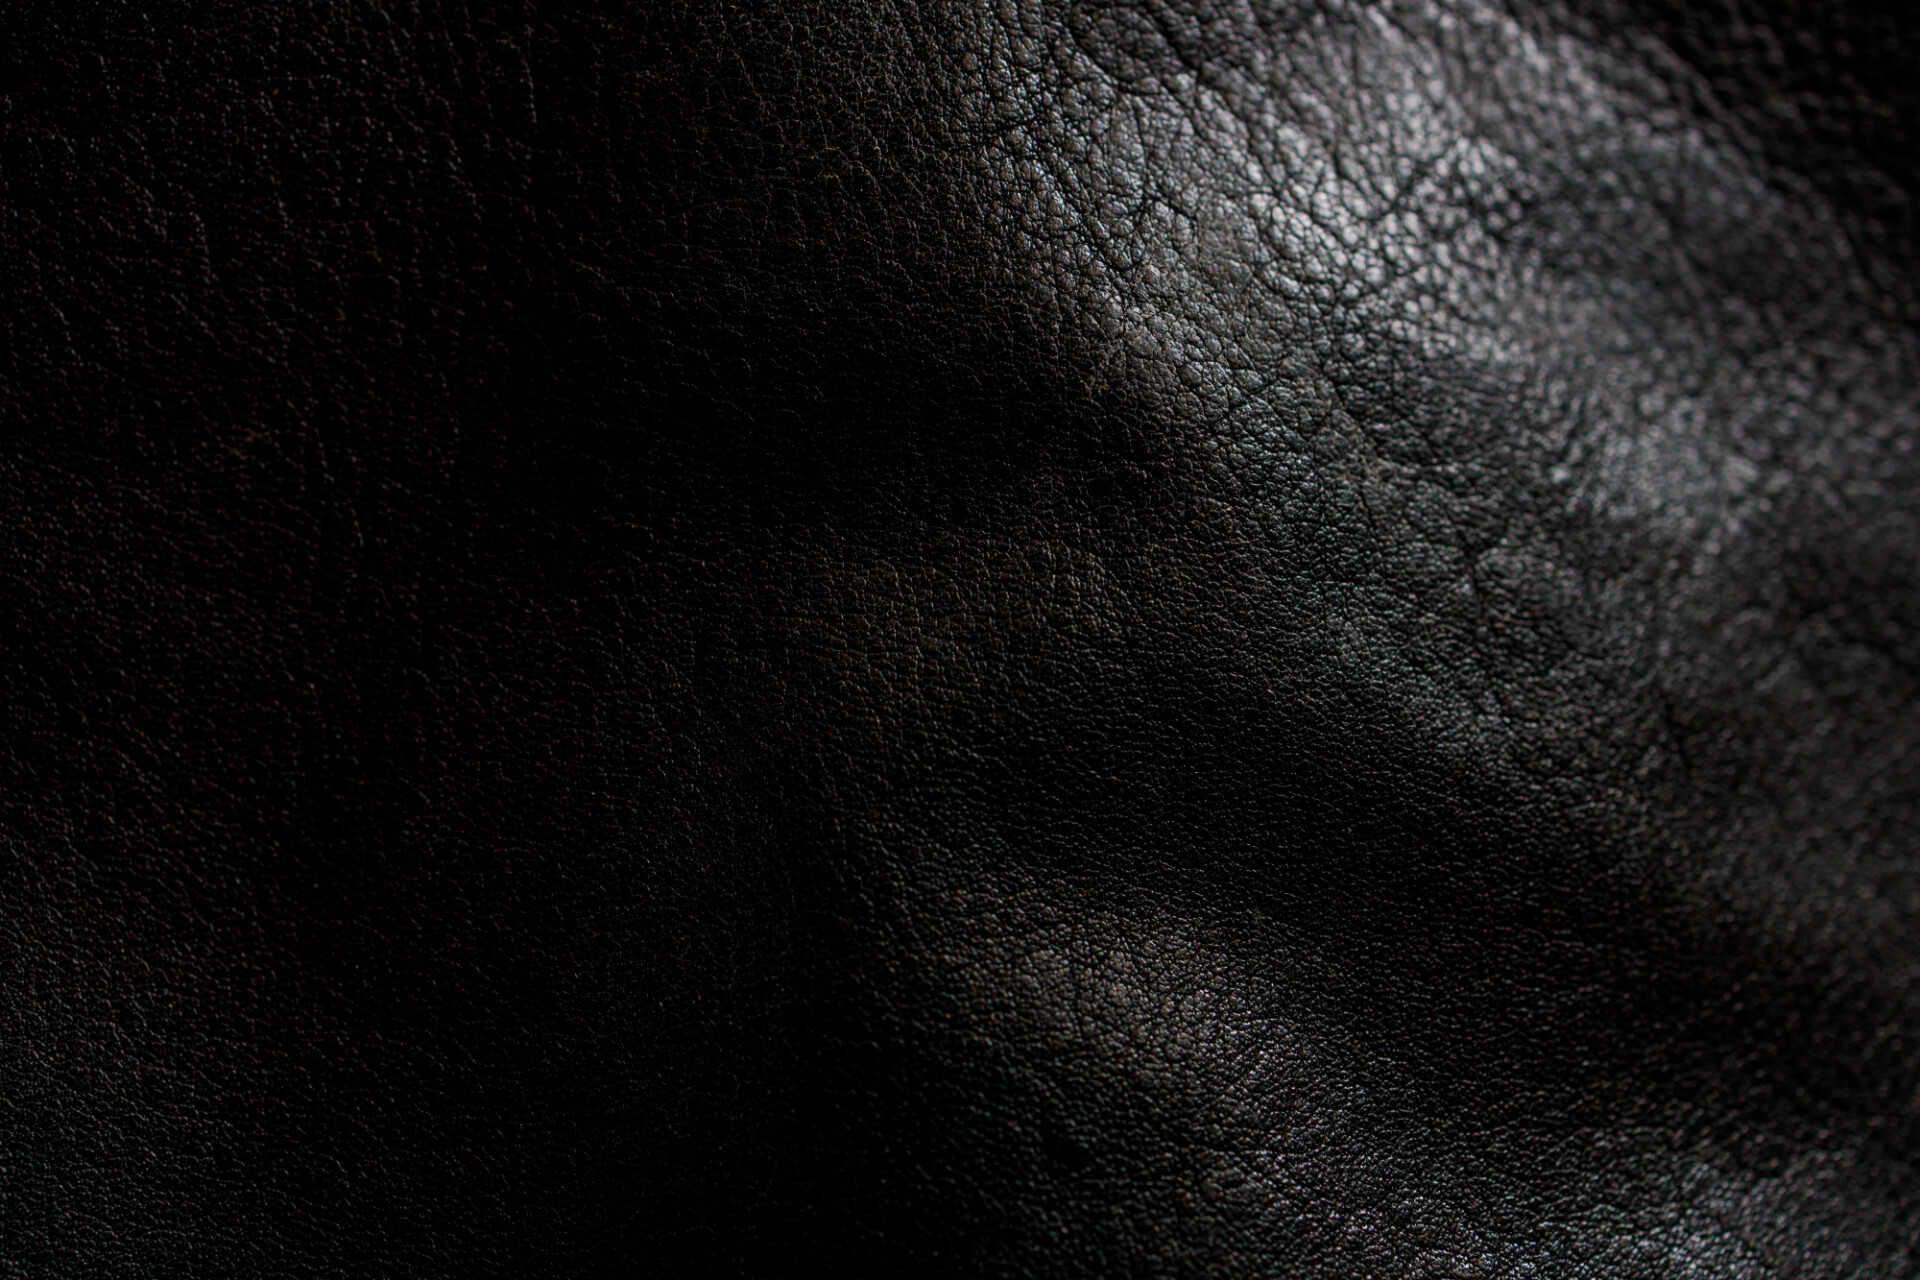 Black elegant leather texture - Photo #9138 - motosha | Free Stock Photos